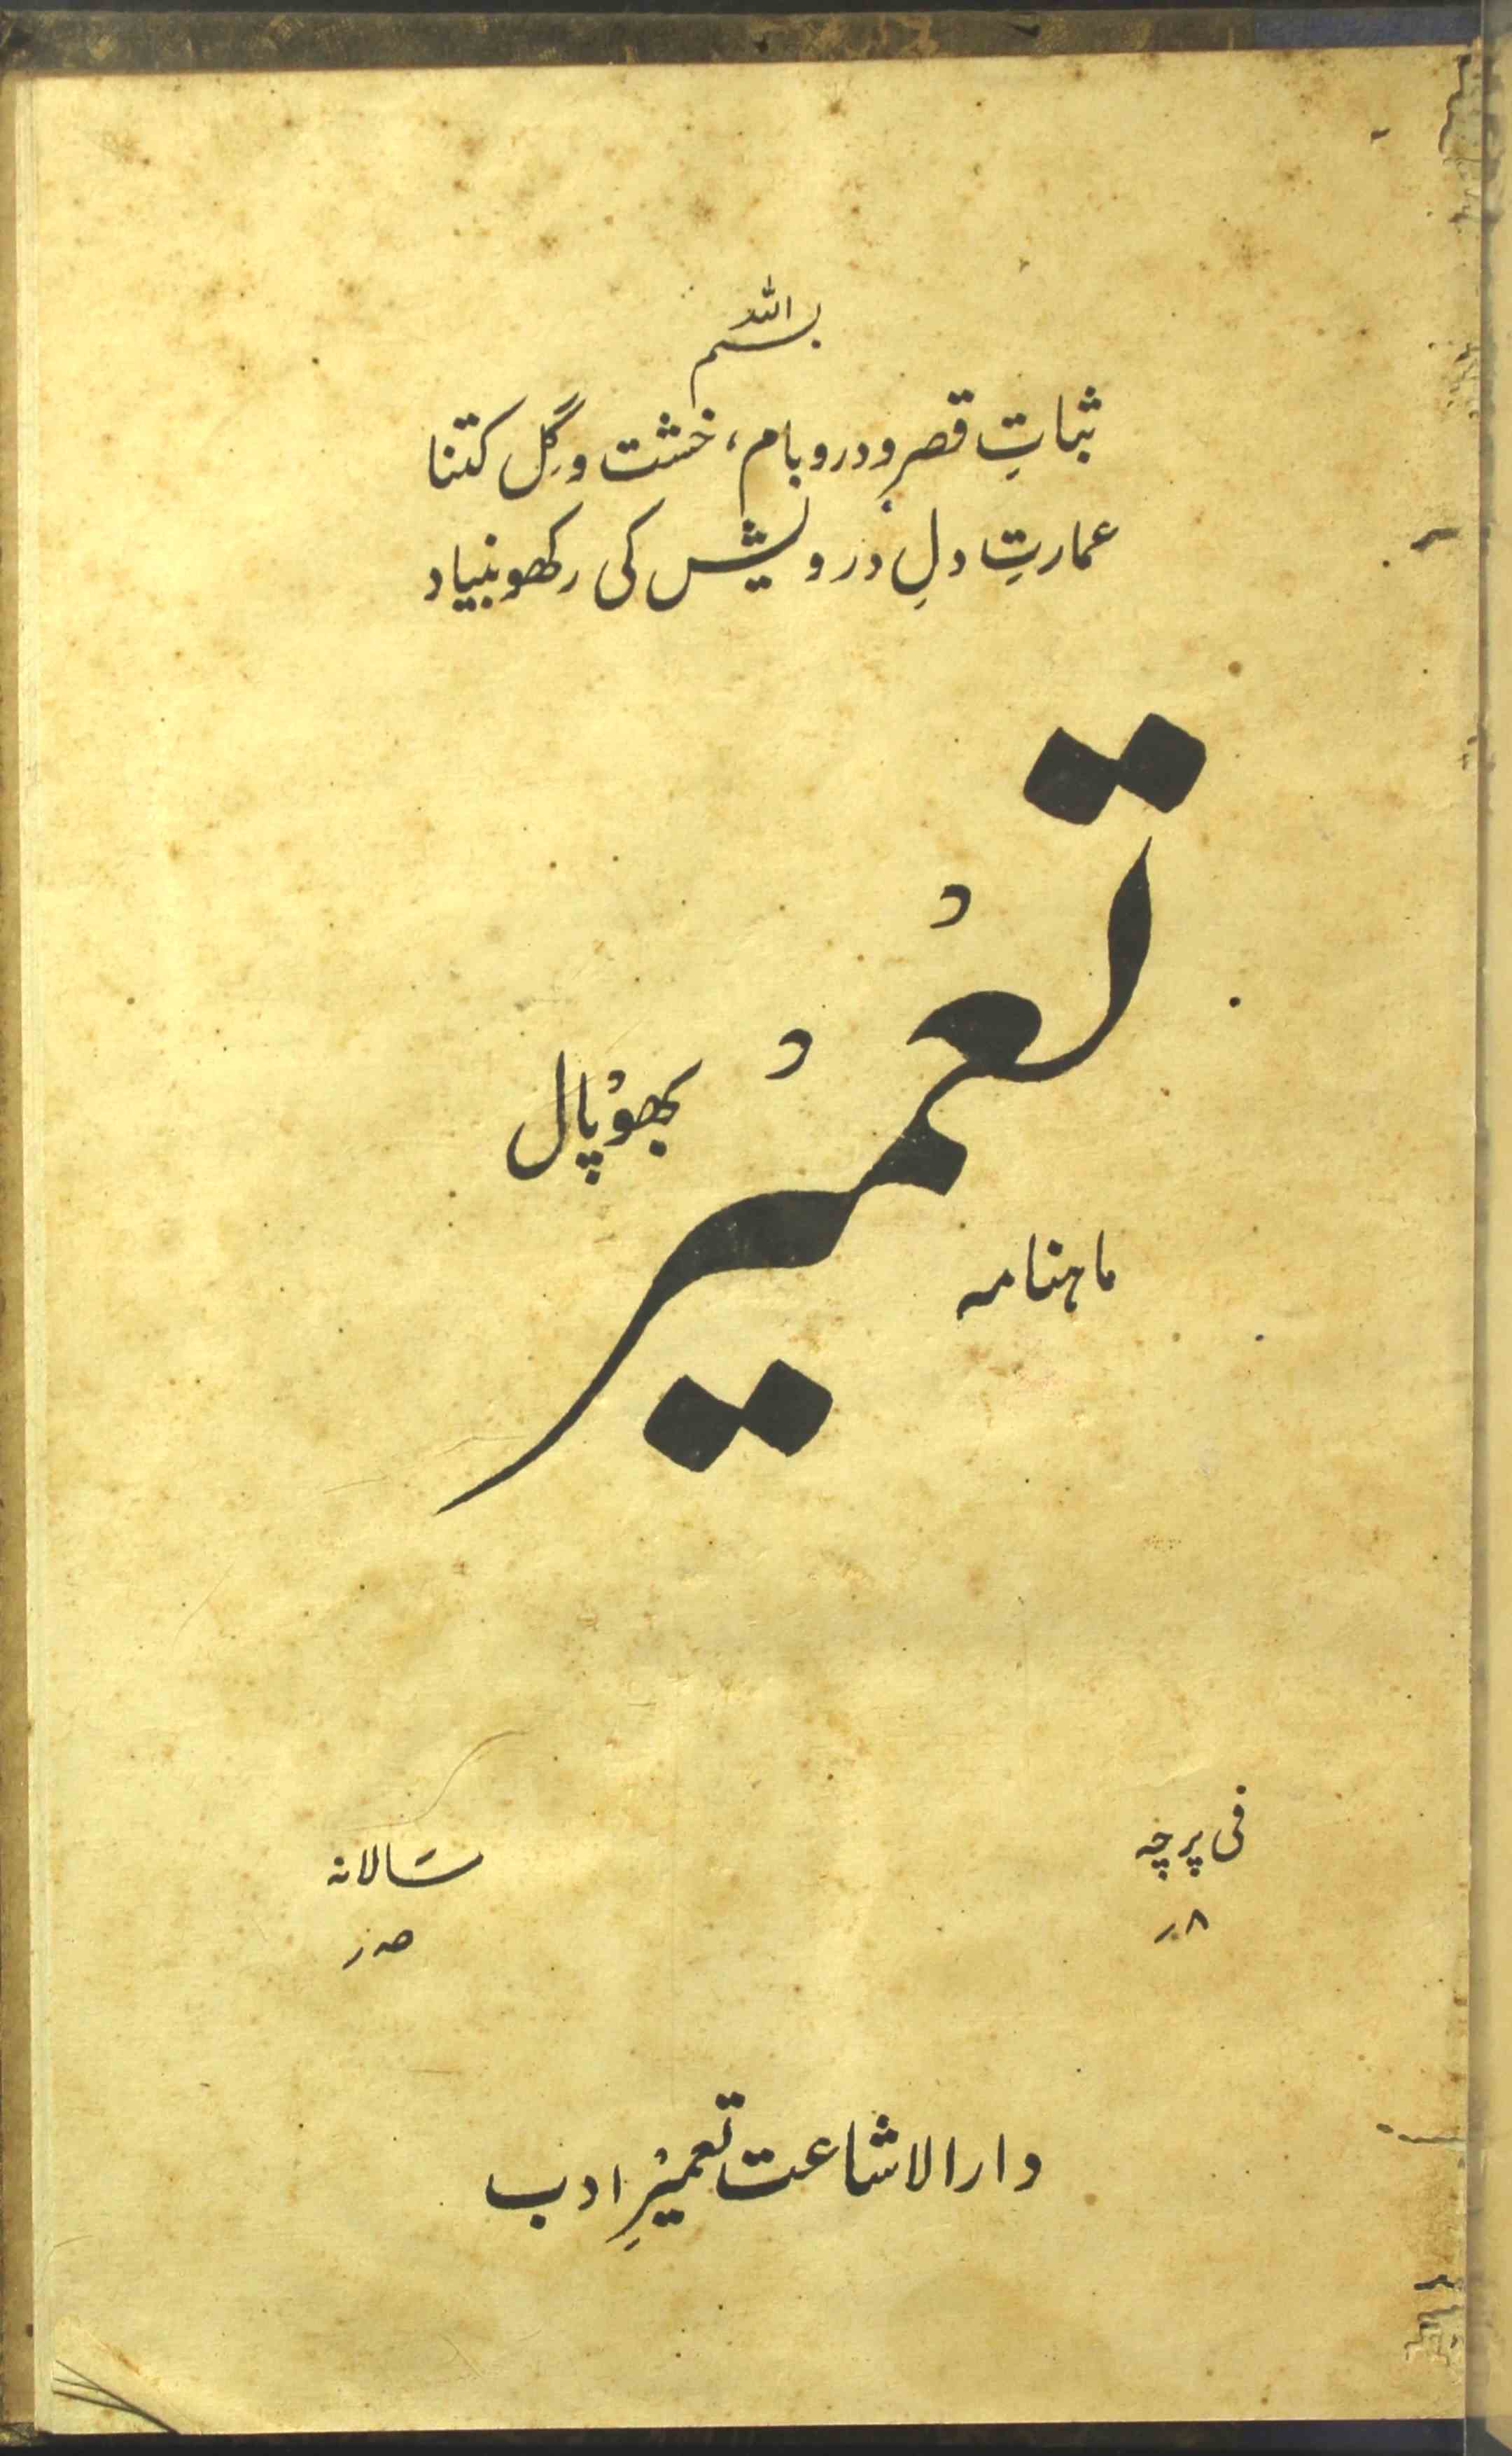 Tameer Jild 1 Shumara 5 May 1947